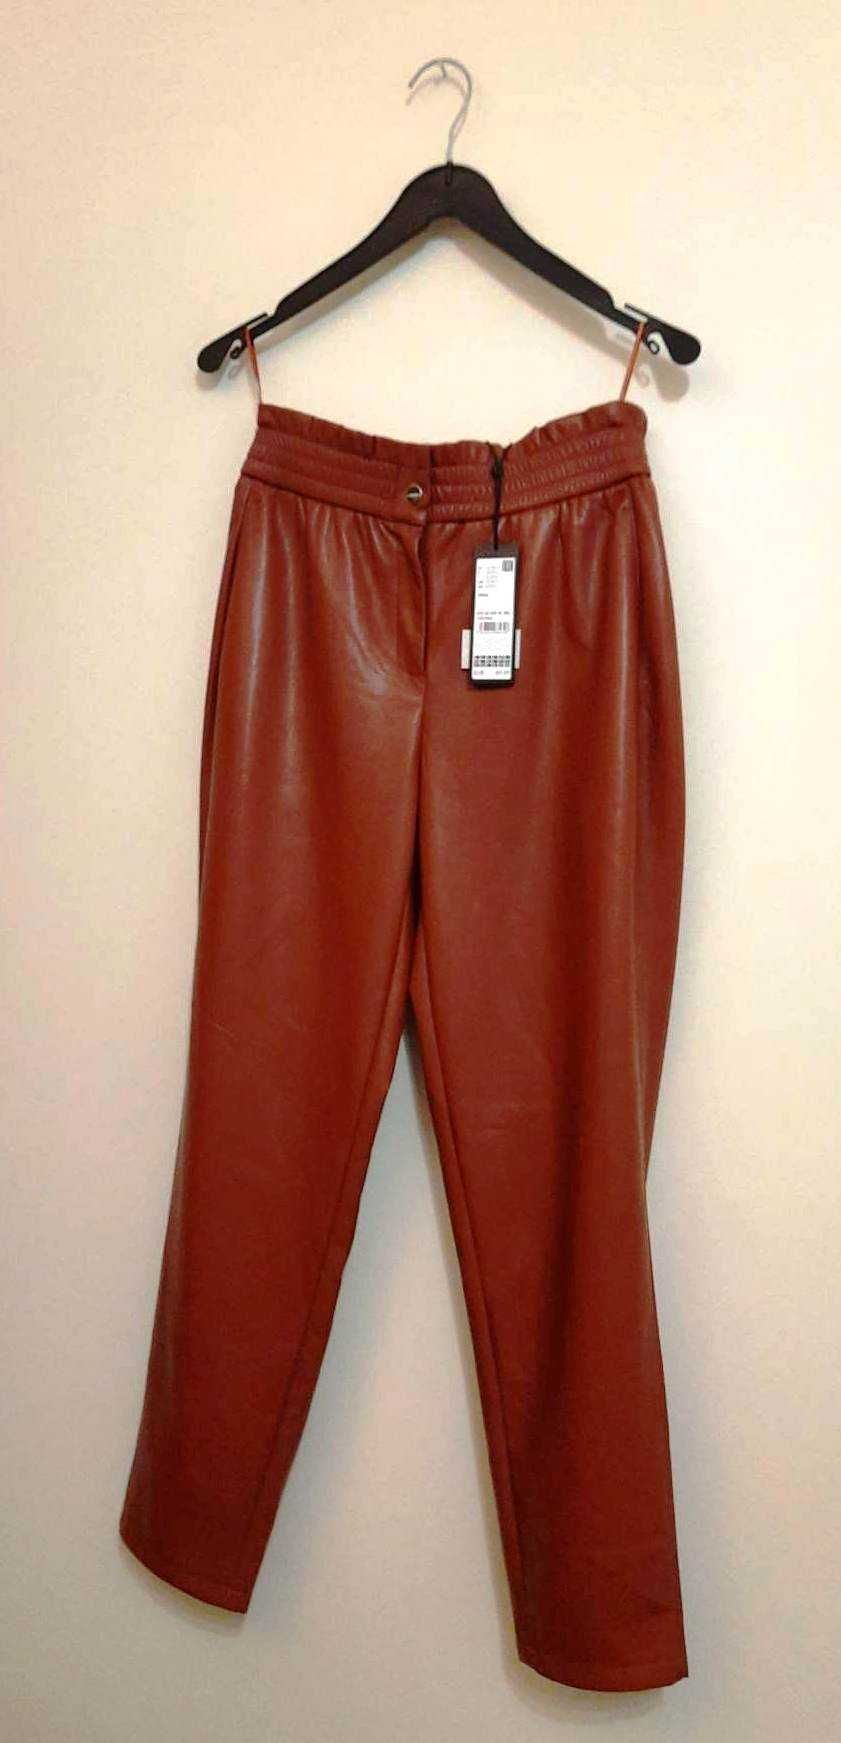 Nowe spodnie damskie – Comma, kolor brązowy